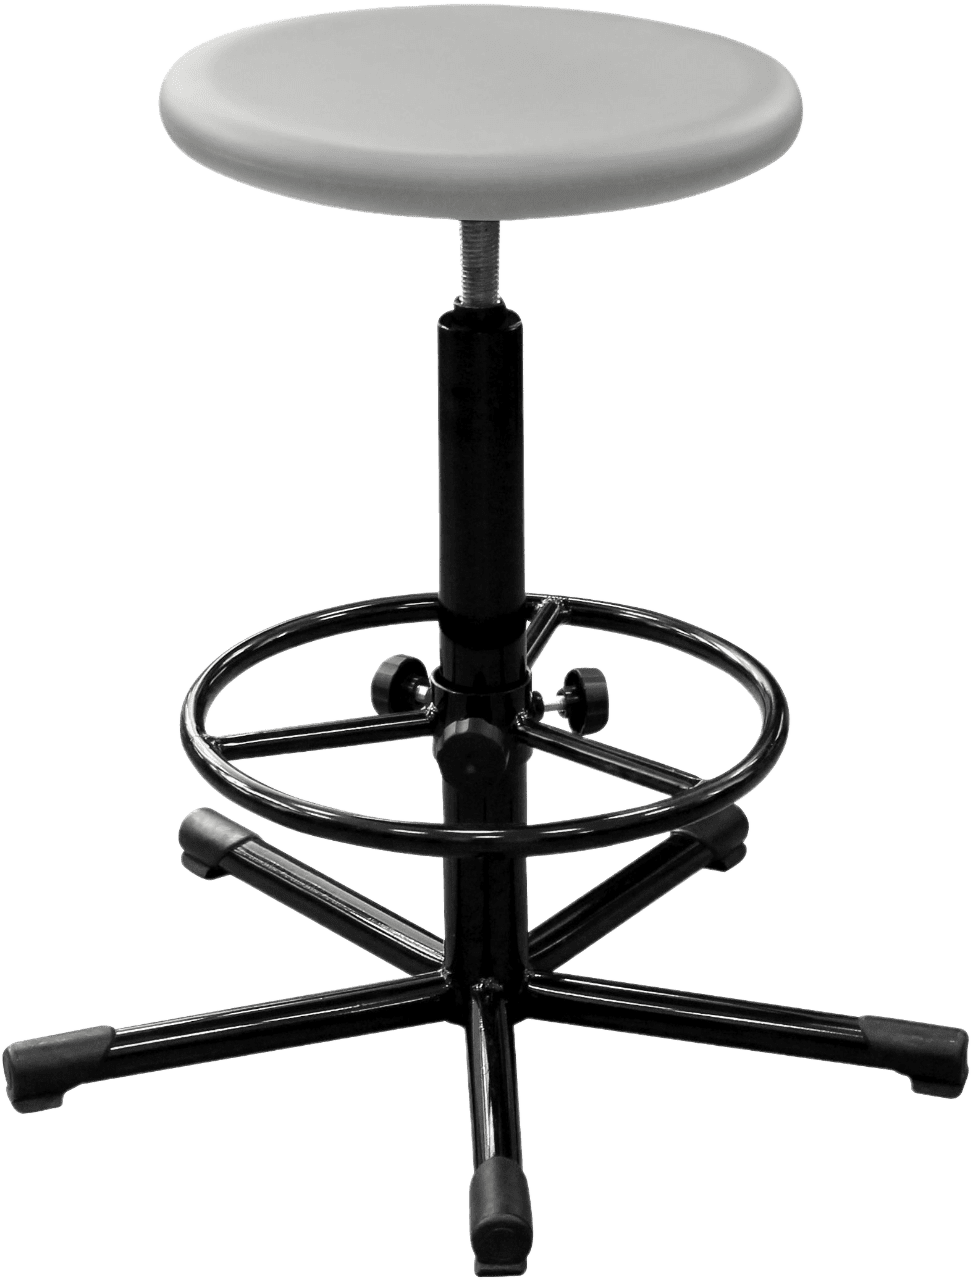 Табурет полиуретановый медицинский Т09 с круглым сиденьем серого цвета